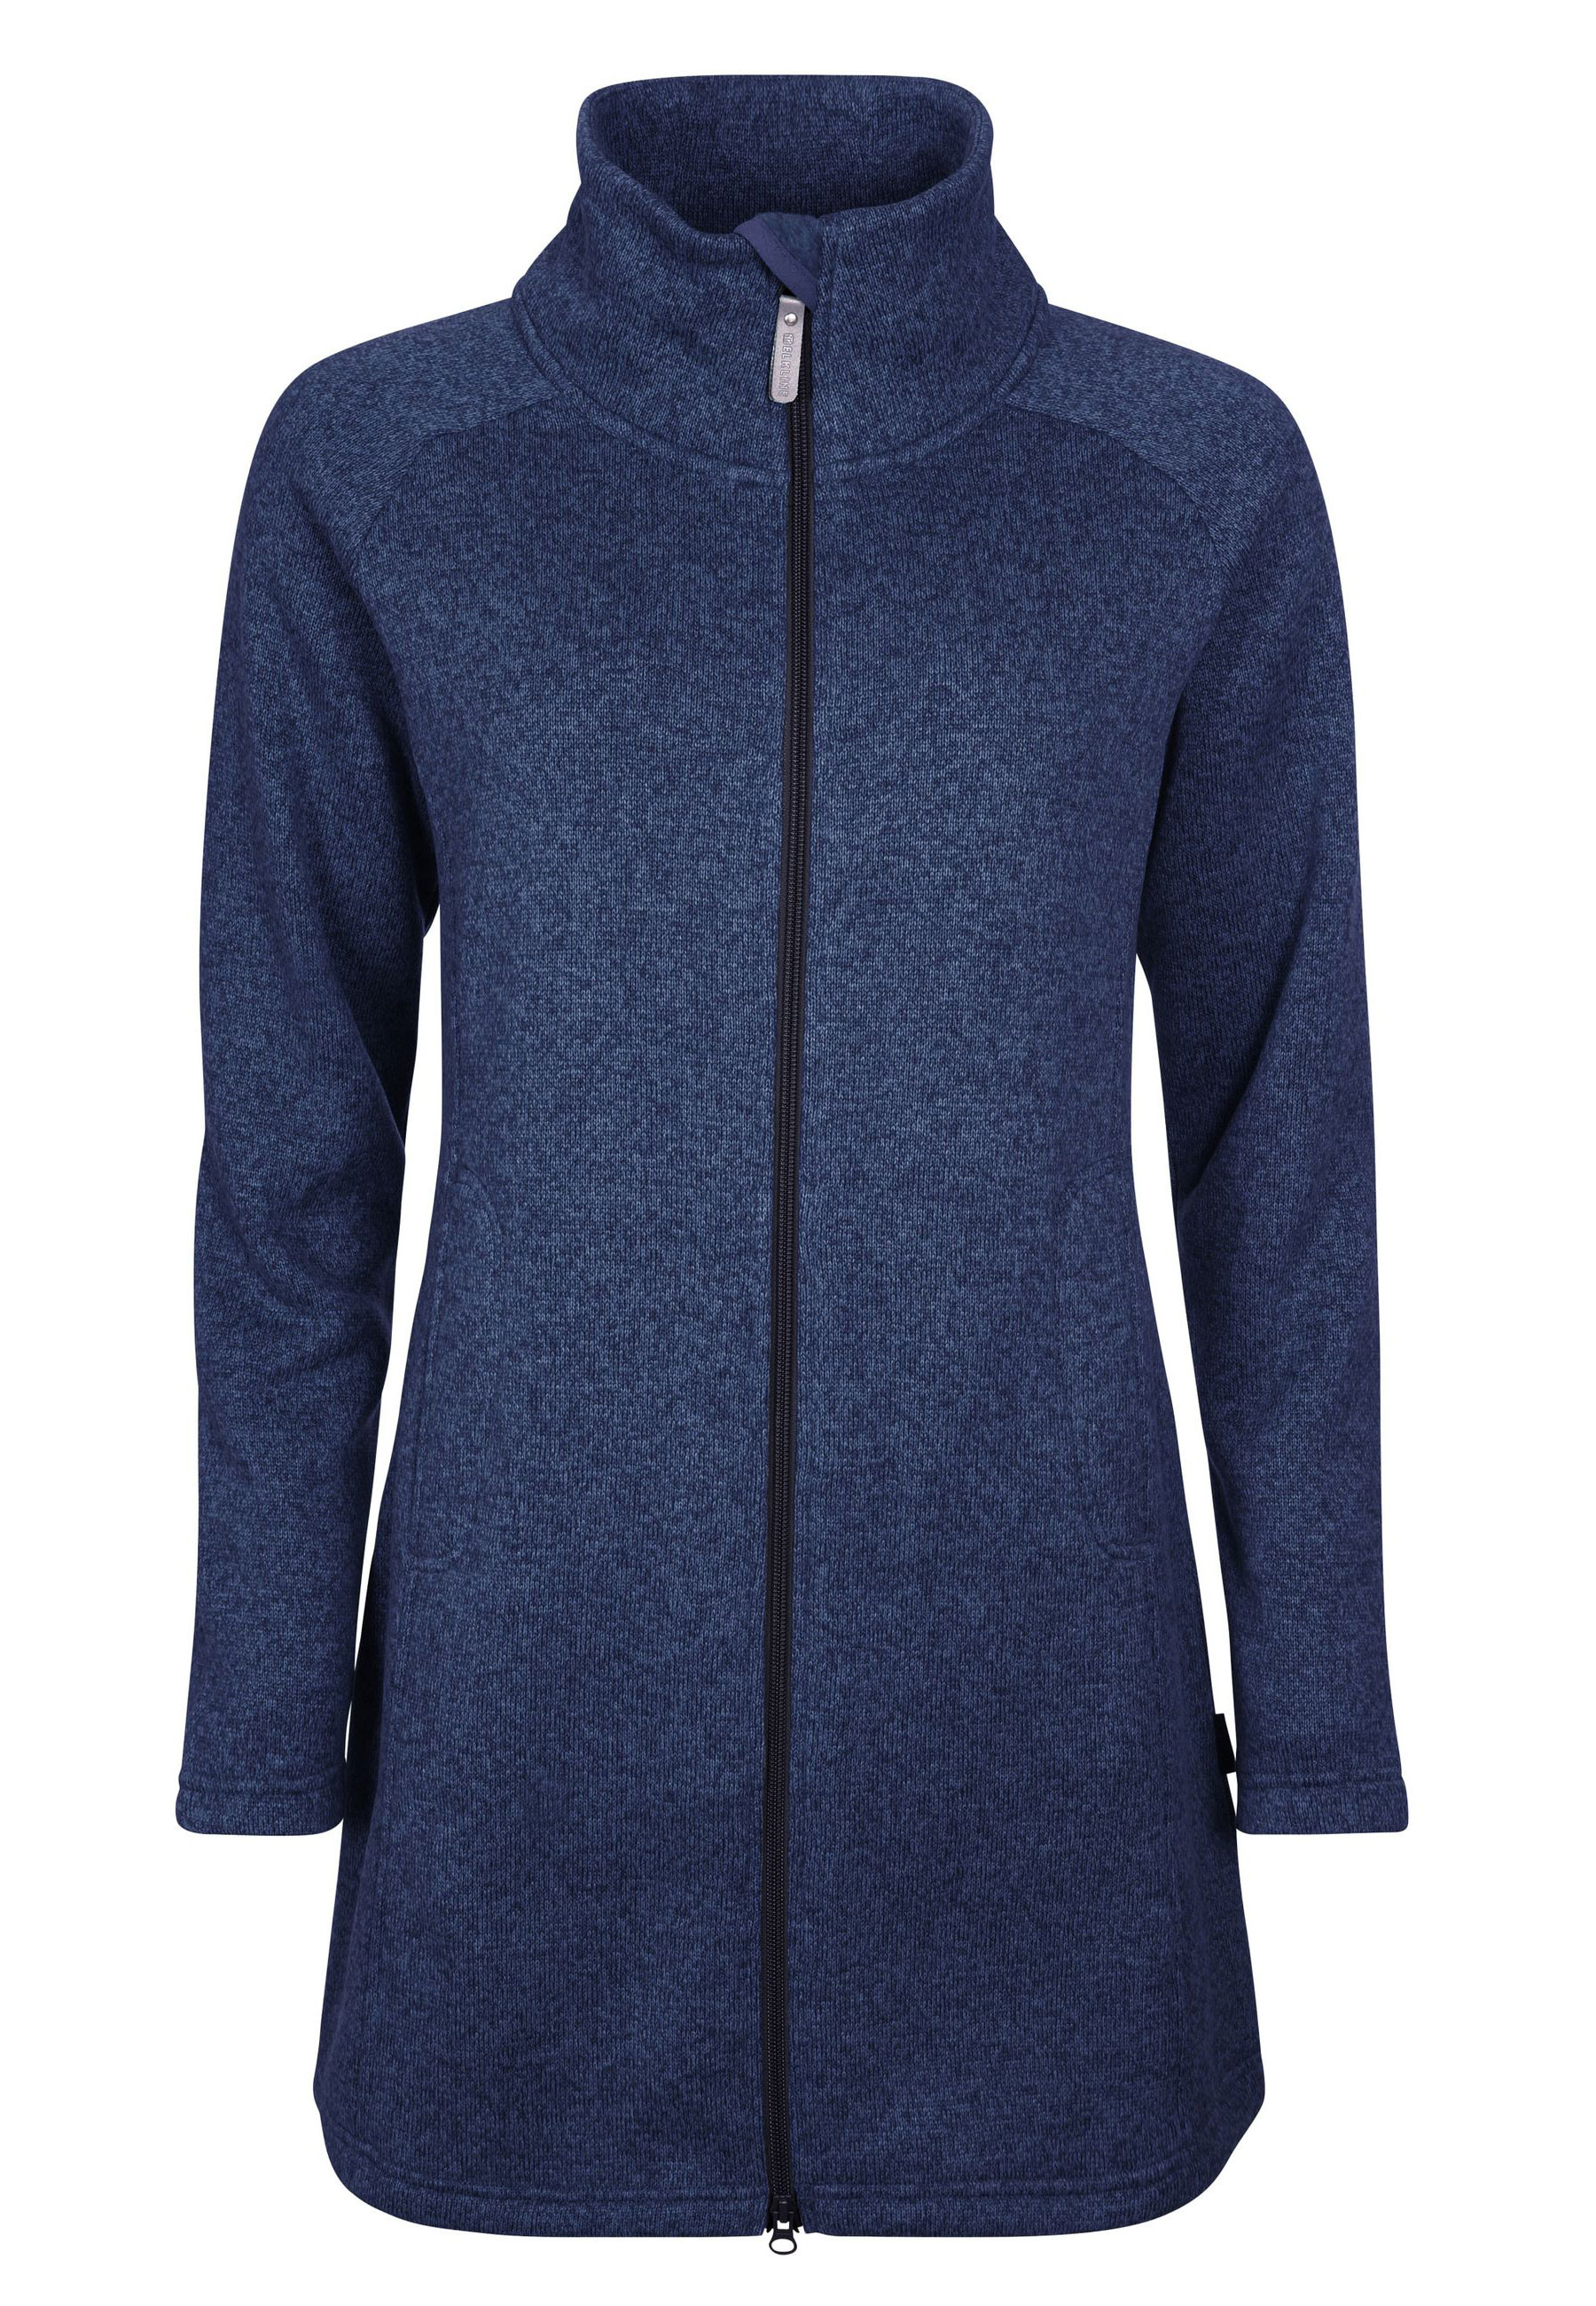 флисовая куртка tricky elkline цвет blueshadow Куртка elkline Fleecemantel Bestcondition, цвет blueshadow